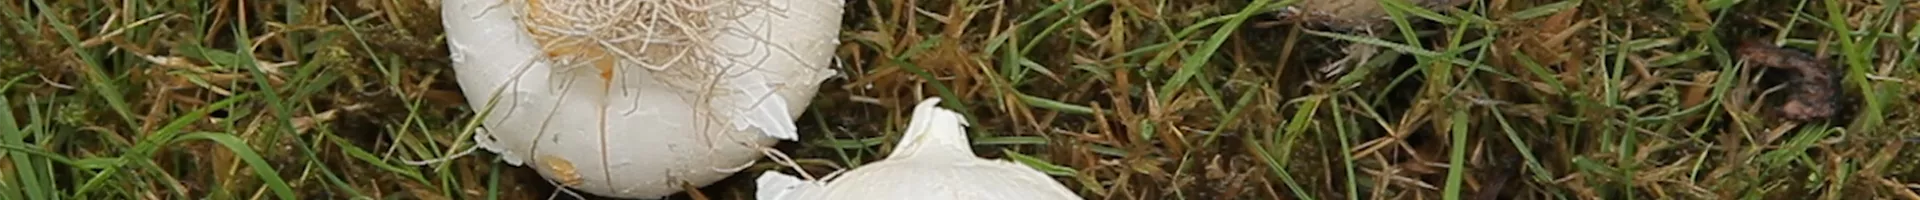 Zierlauch - Blumenzwiebeln einpflanzen (thumbnail)2.jpg